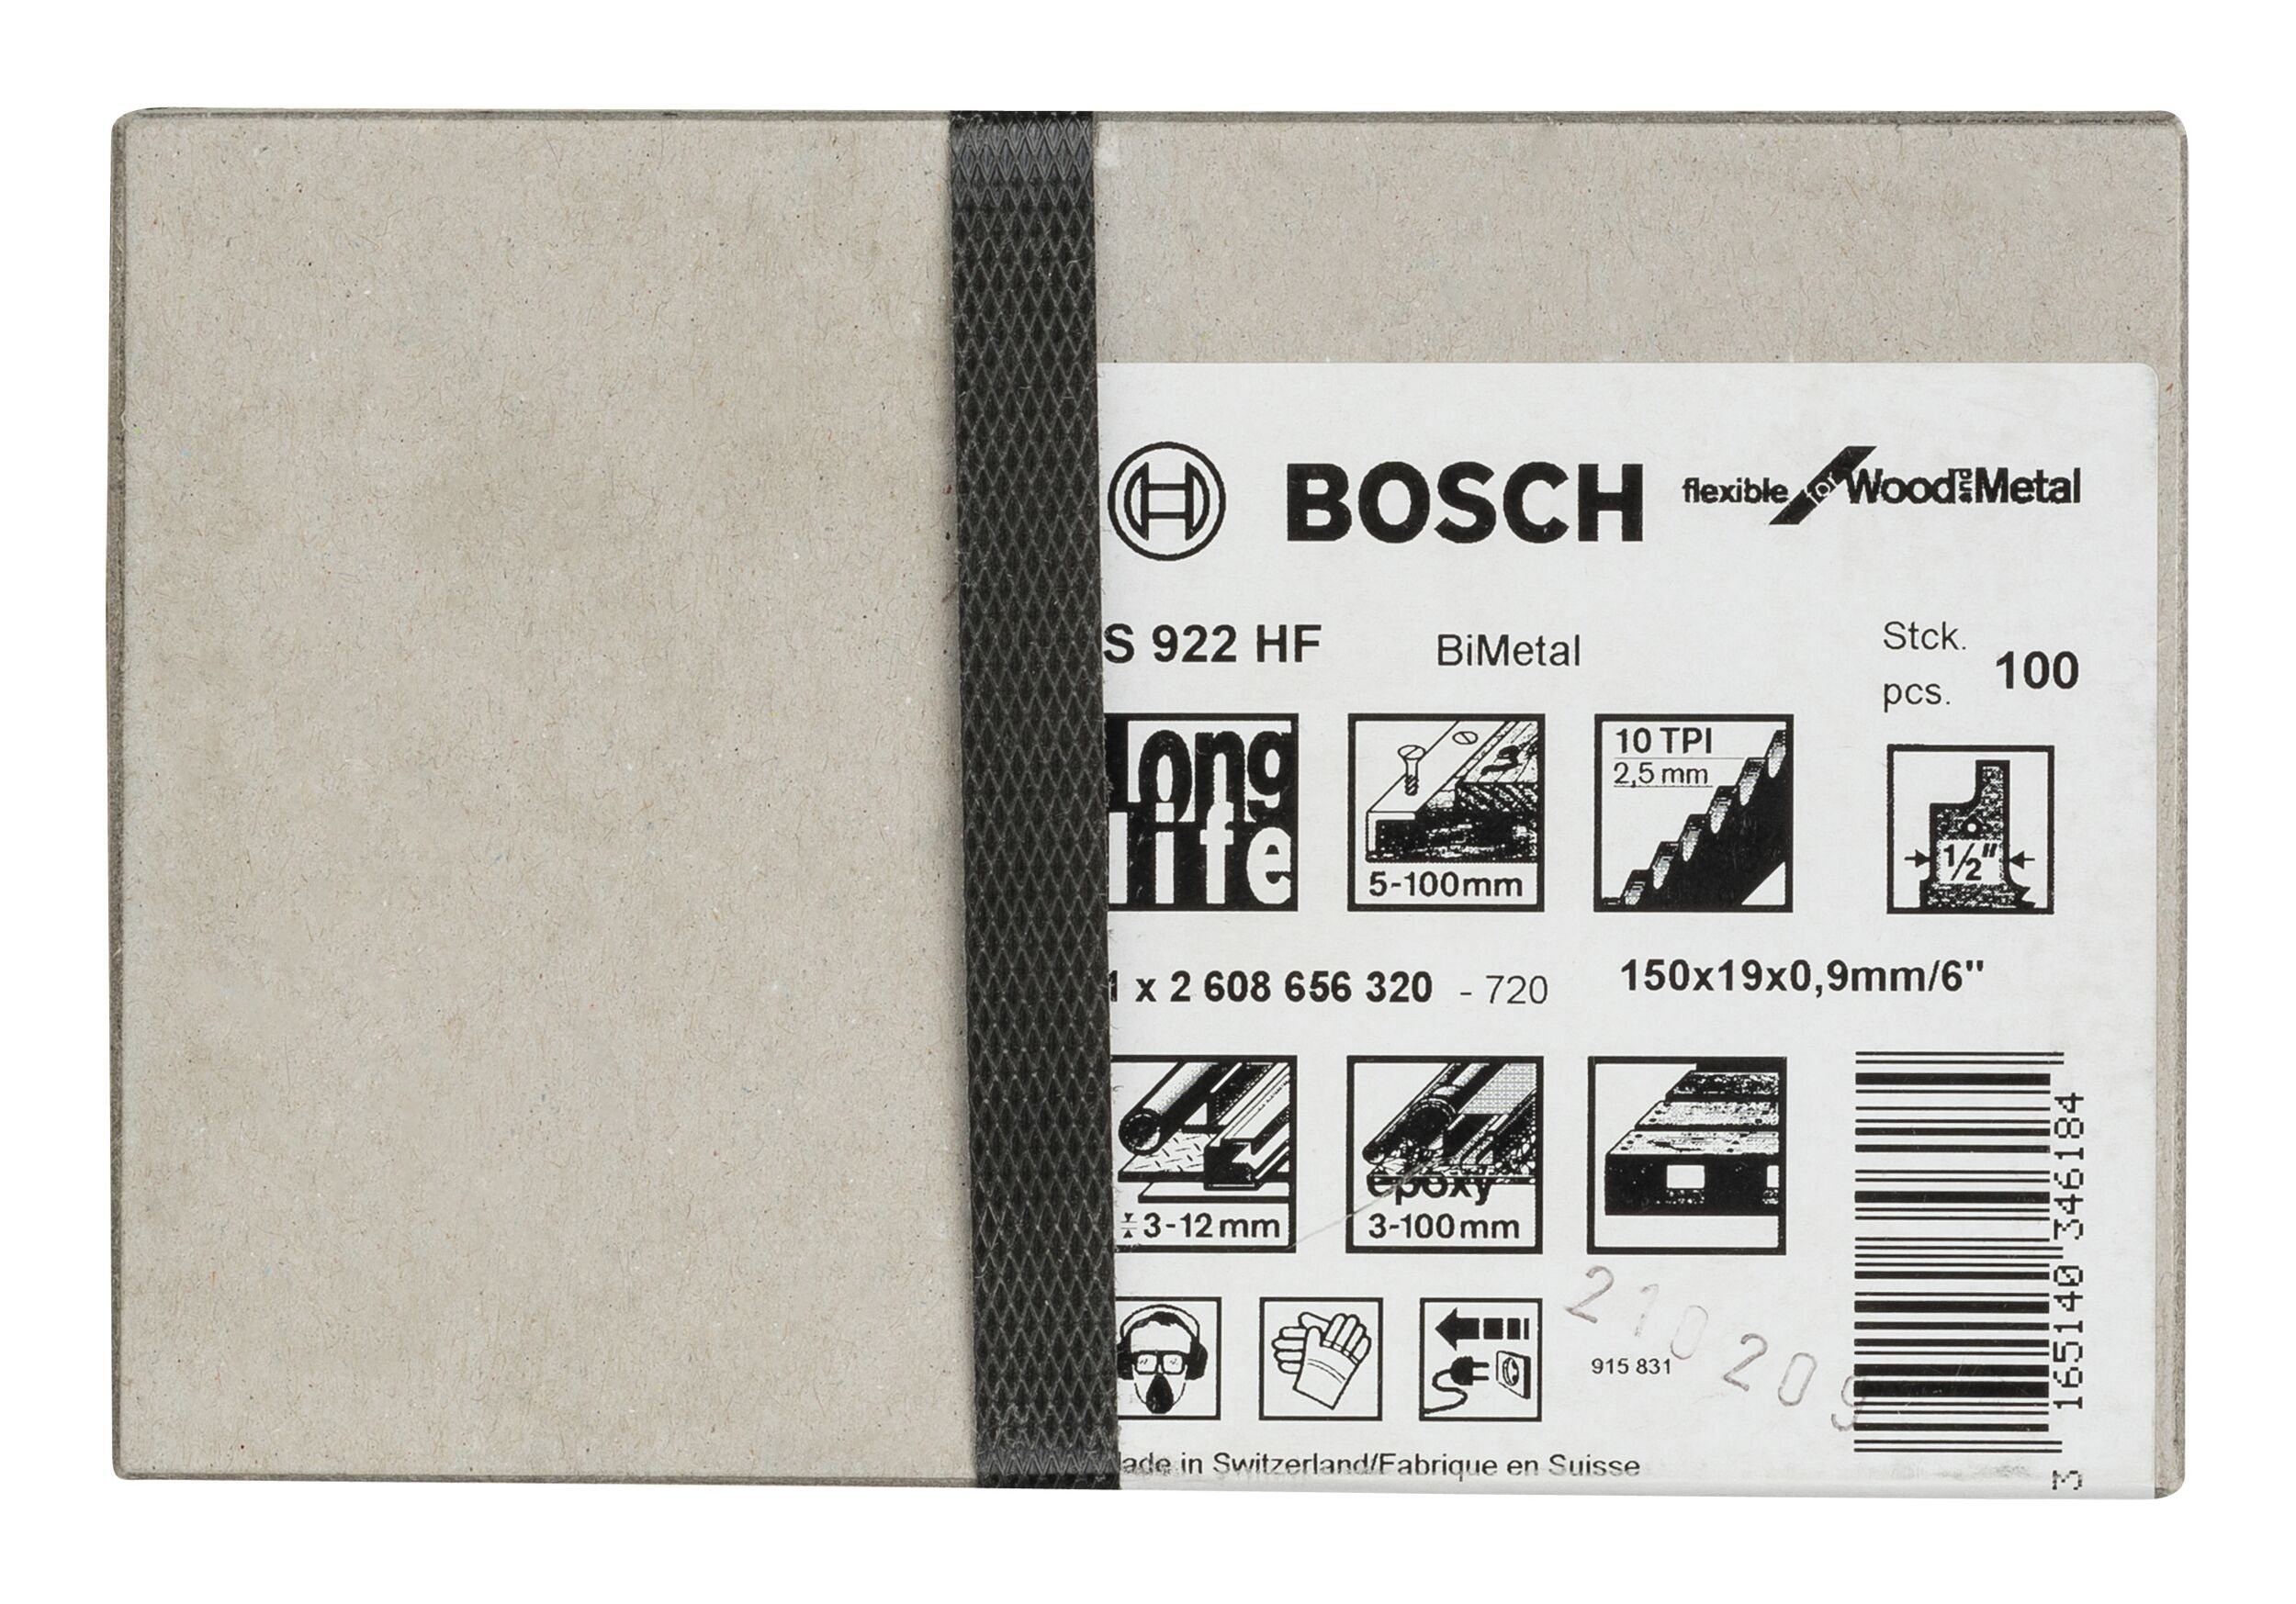 - HF Flexible Säbelsägeblatt S BOSCH 100er-Pack (100 and Metal Wood Stück), for 922